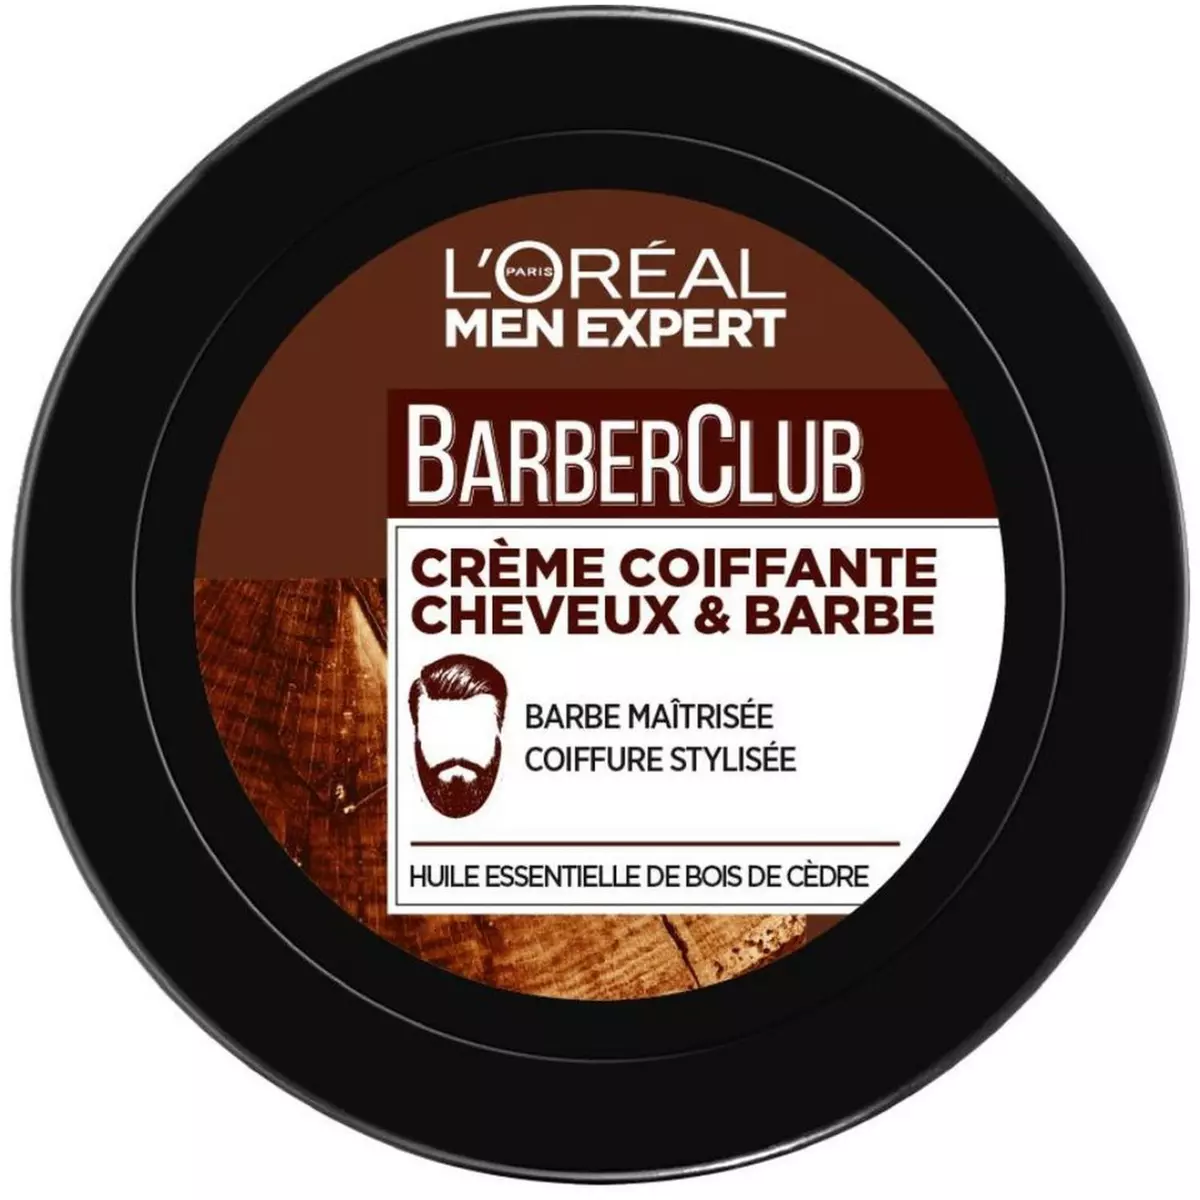 L'OREAL Barber Club crème coiffante cheveux & barbe 75ml